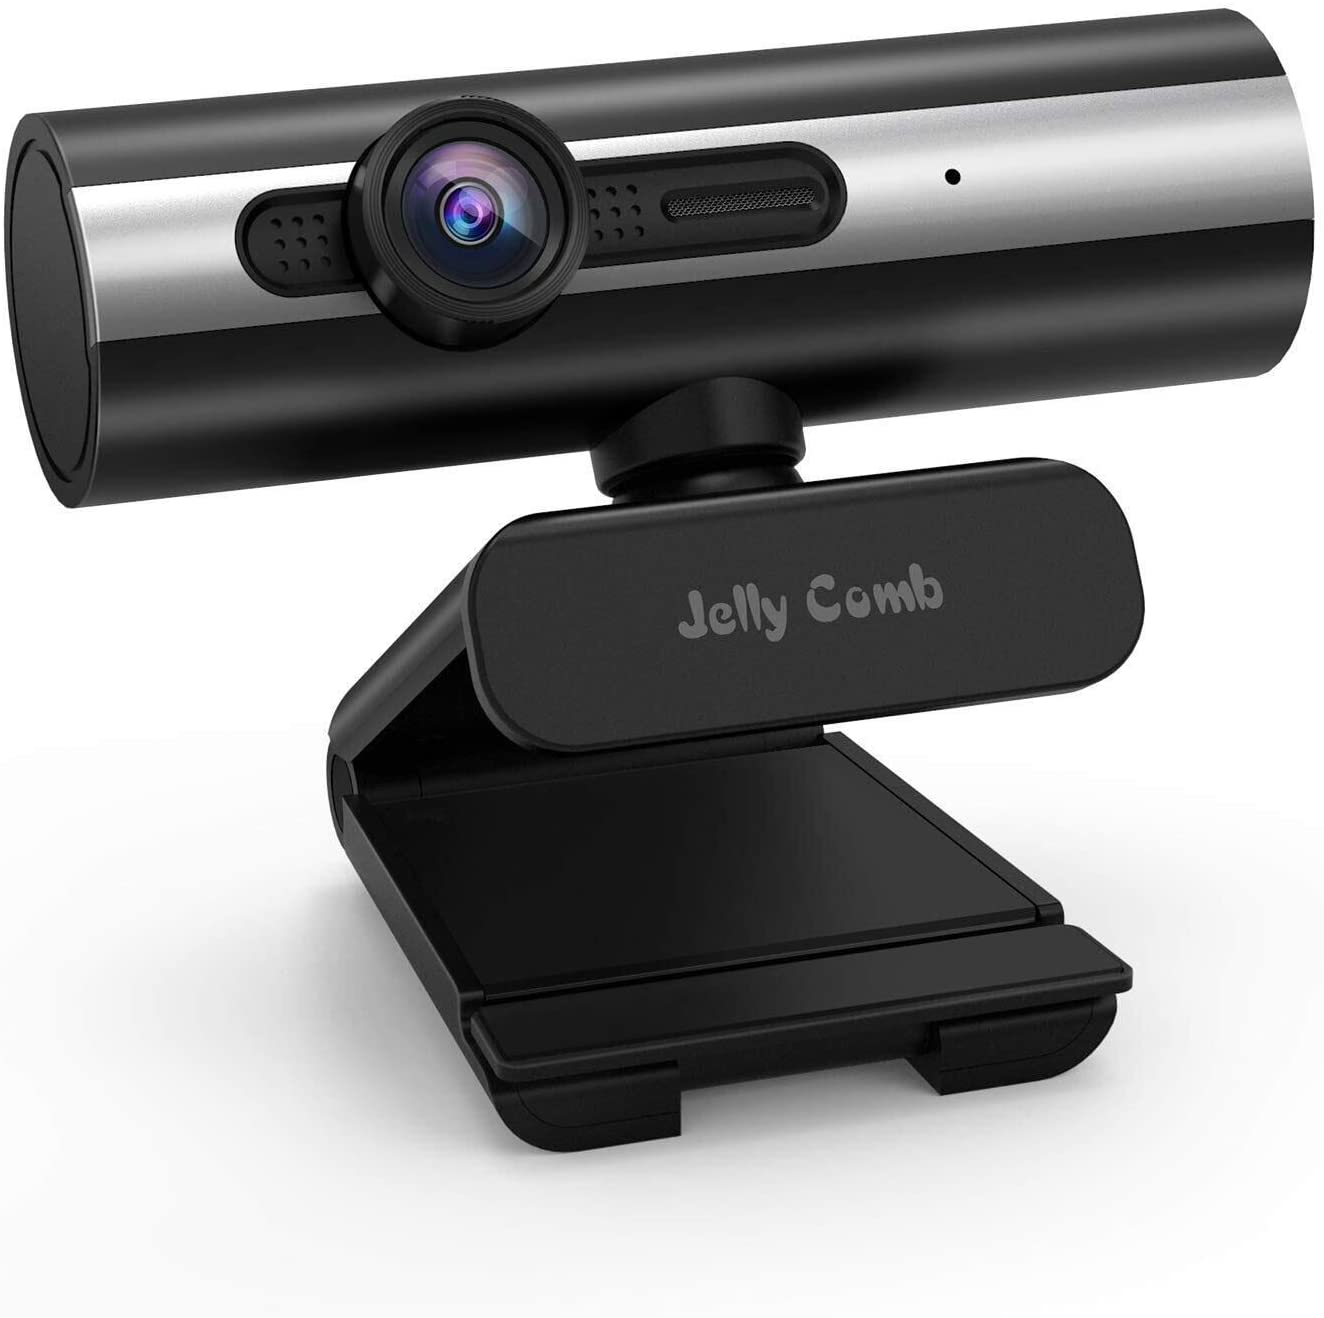 360 ° Drehbare PC Kamera mit Stereo Mikrofon für Skype Schwarz Video Chat und Aufnahme Jelly Comb 1080P HD Webcam mit Stativ 